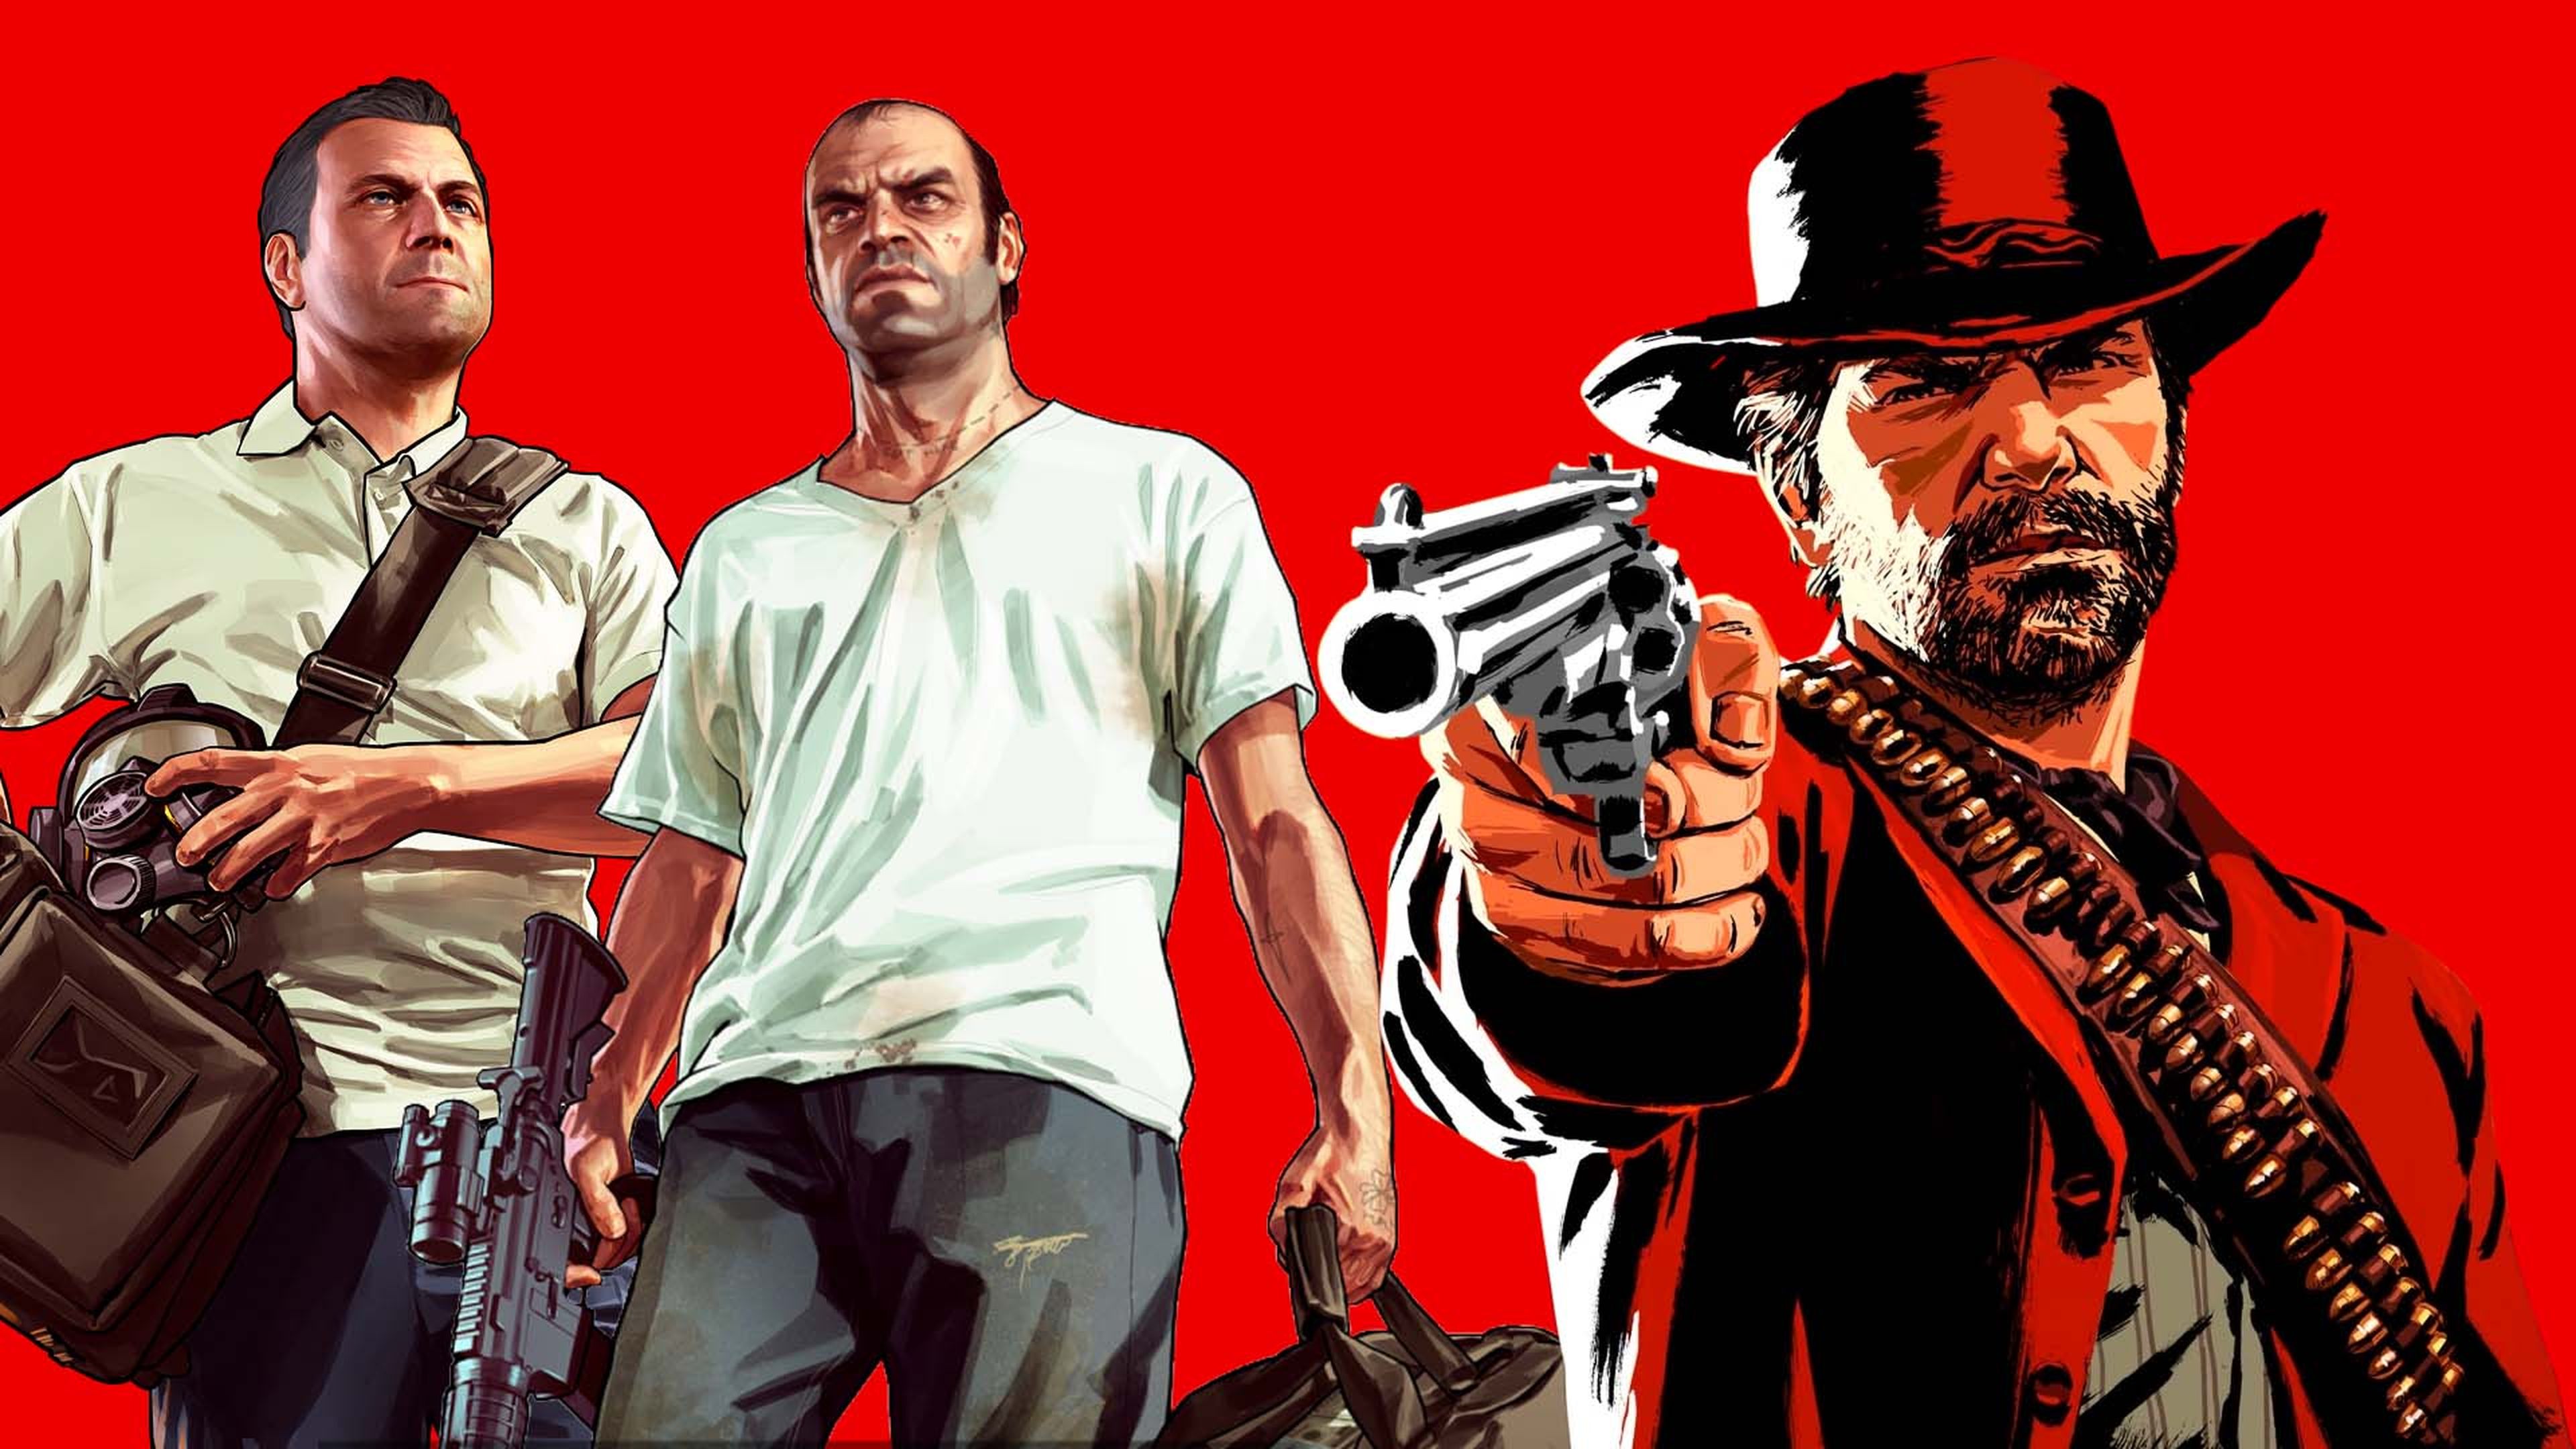 2 JUEGOS EN 1 Red Dead Redemption 2 MAS GTA V PS5